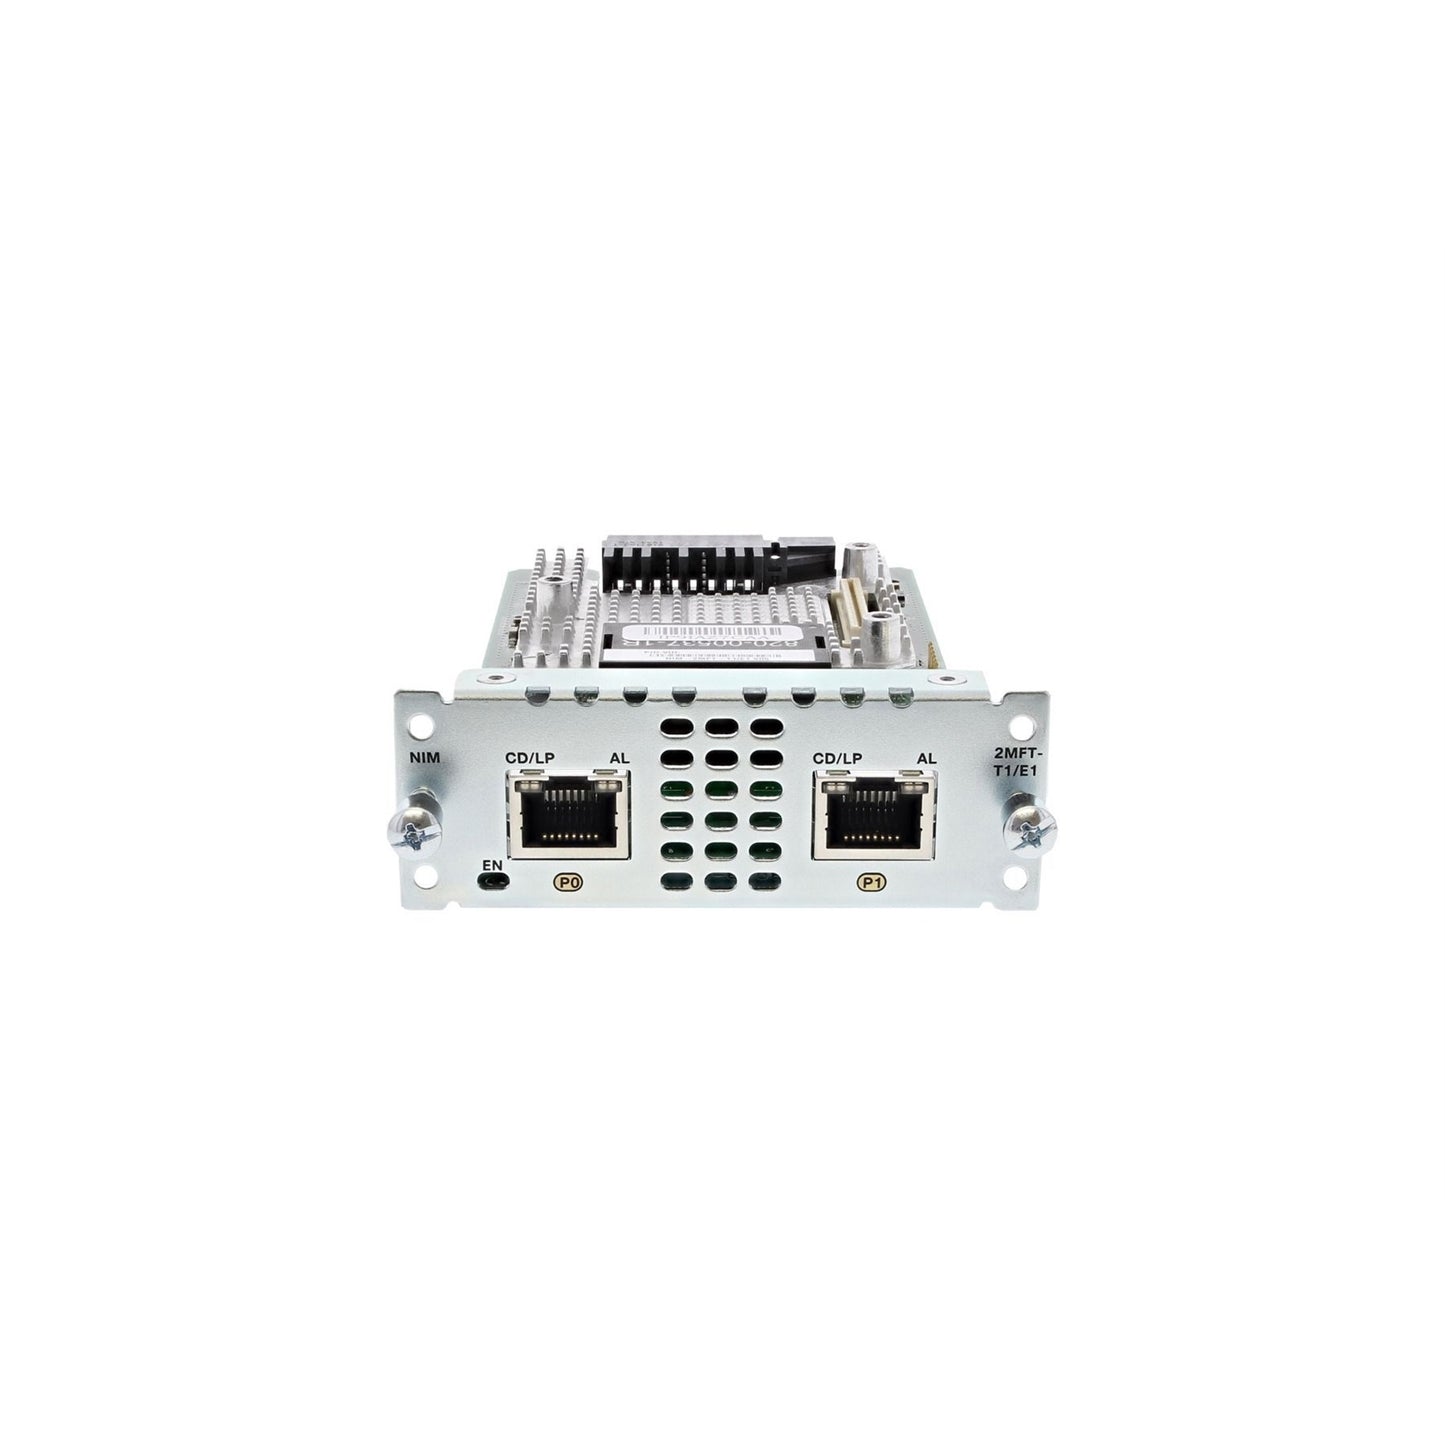 Cisco NIM-2MFT-T1/E1 2 Port Multi-flex Trunk Voice/Clear-channel T1/E1 Module (Refurbished)